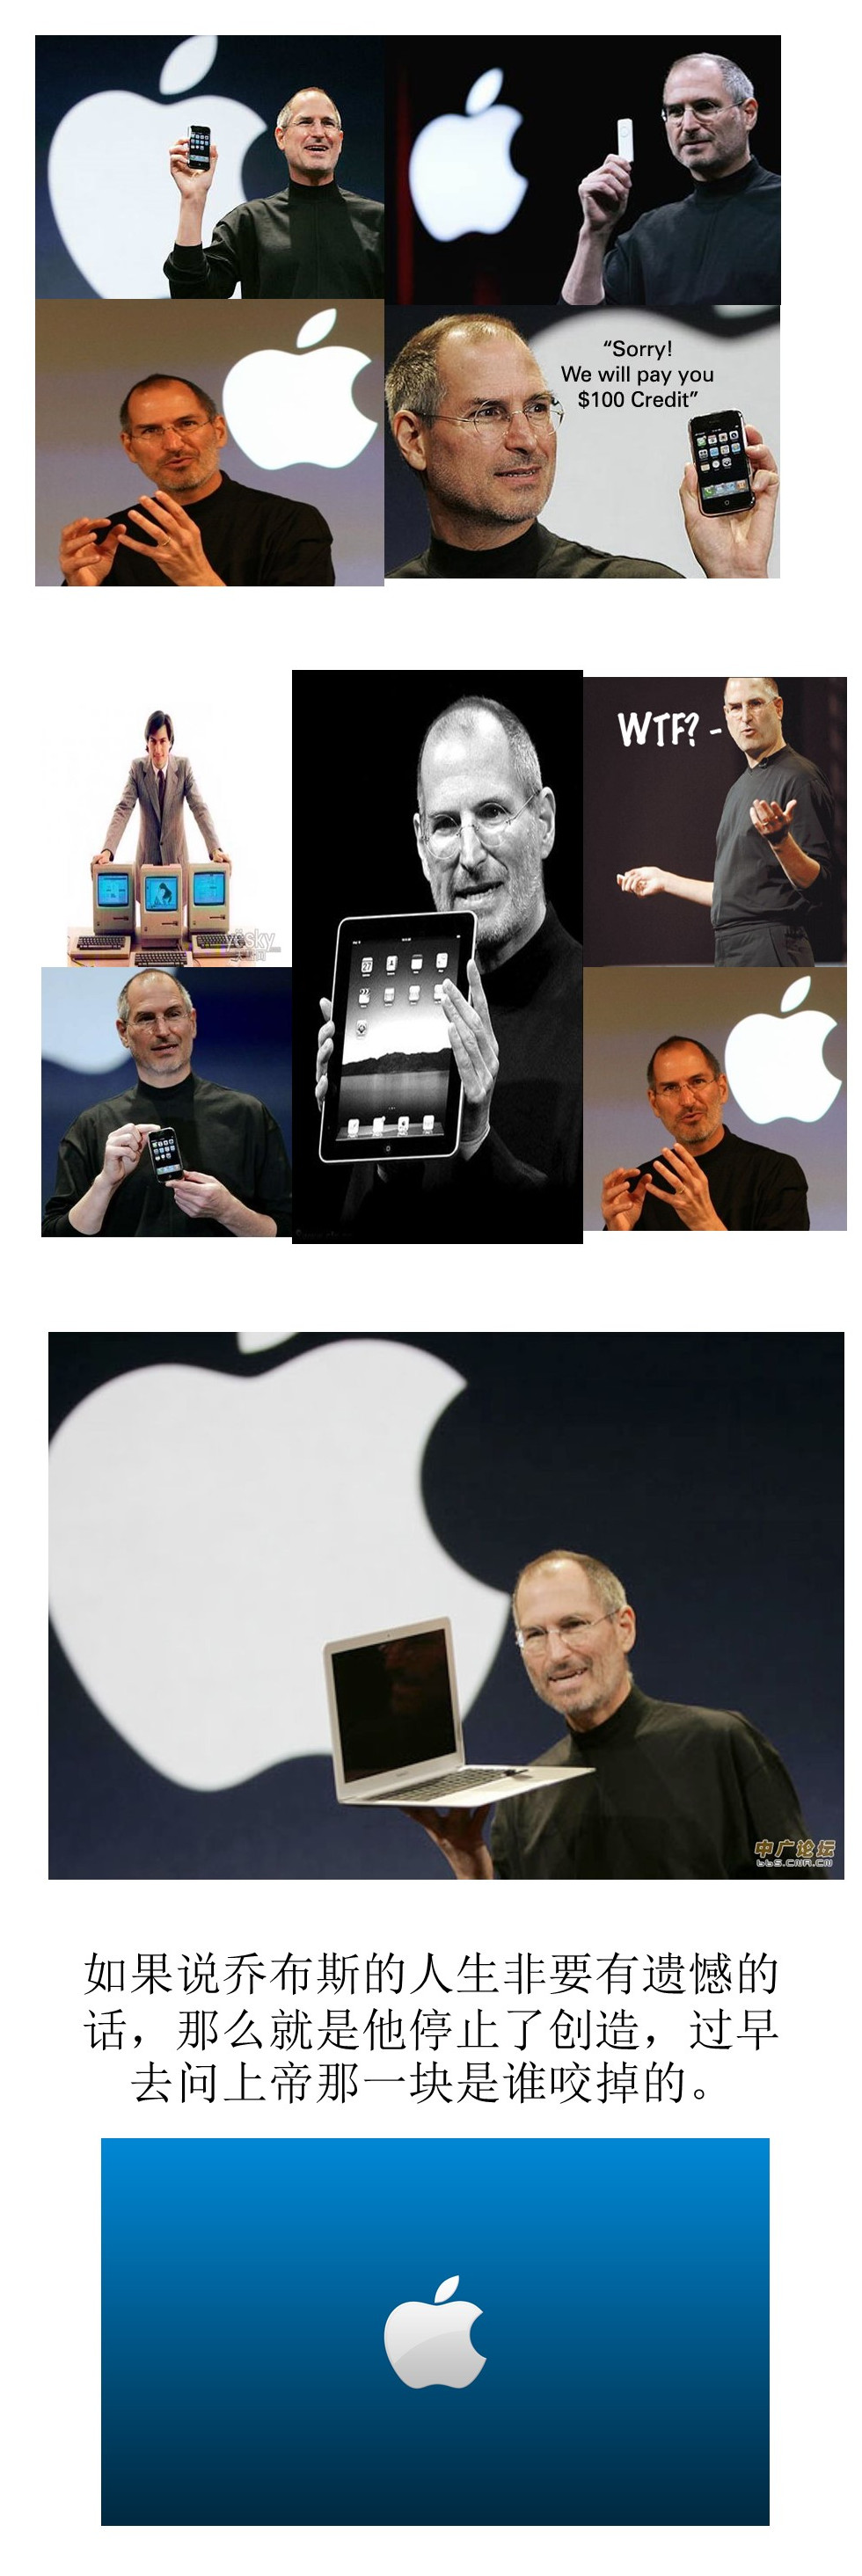 苹果创始人乔布斯与他的团队PPT模板下载-聚给网